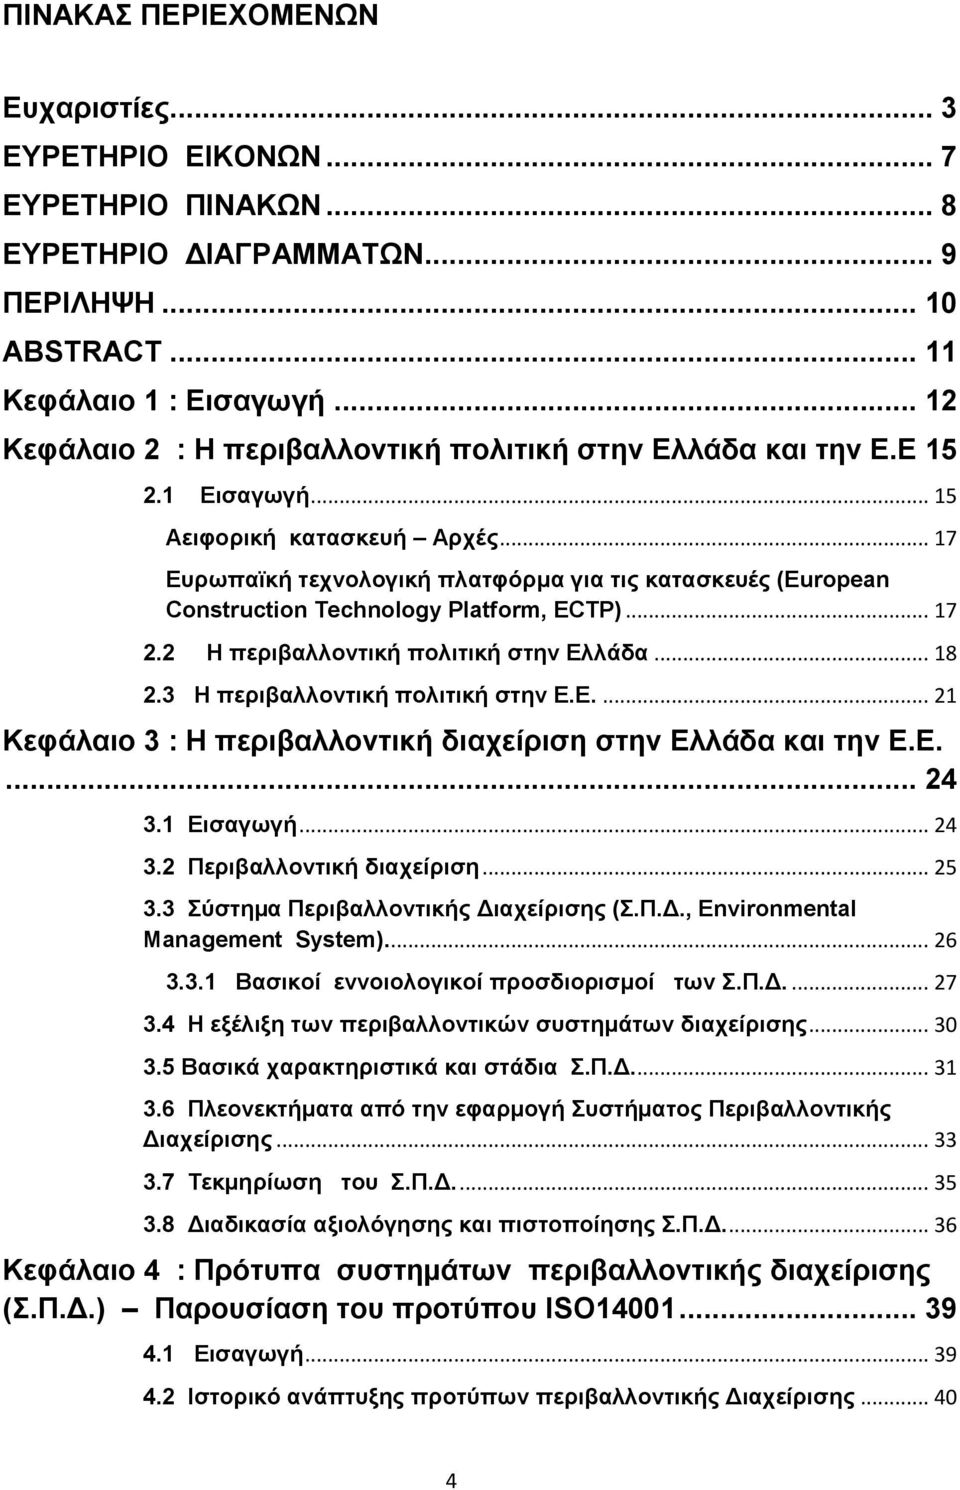 .. 17 Ευρωπαϊκή τεχνολογική πλατφόρμα για τις κατασκευές (European Construction Technology Platform, ECTP)... 17 2.2 Η περιβαλλοντική πολιτική στην Ελλάδα... 18 2.3 Η περιβαλλοντική πολιτική στην Ε.Ε.... 21 Κεφάλαιο 3 : H περιβαλλοντική διαχείριση στην Ελλάδα και την Ε.